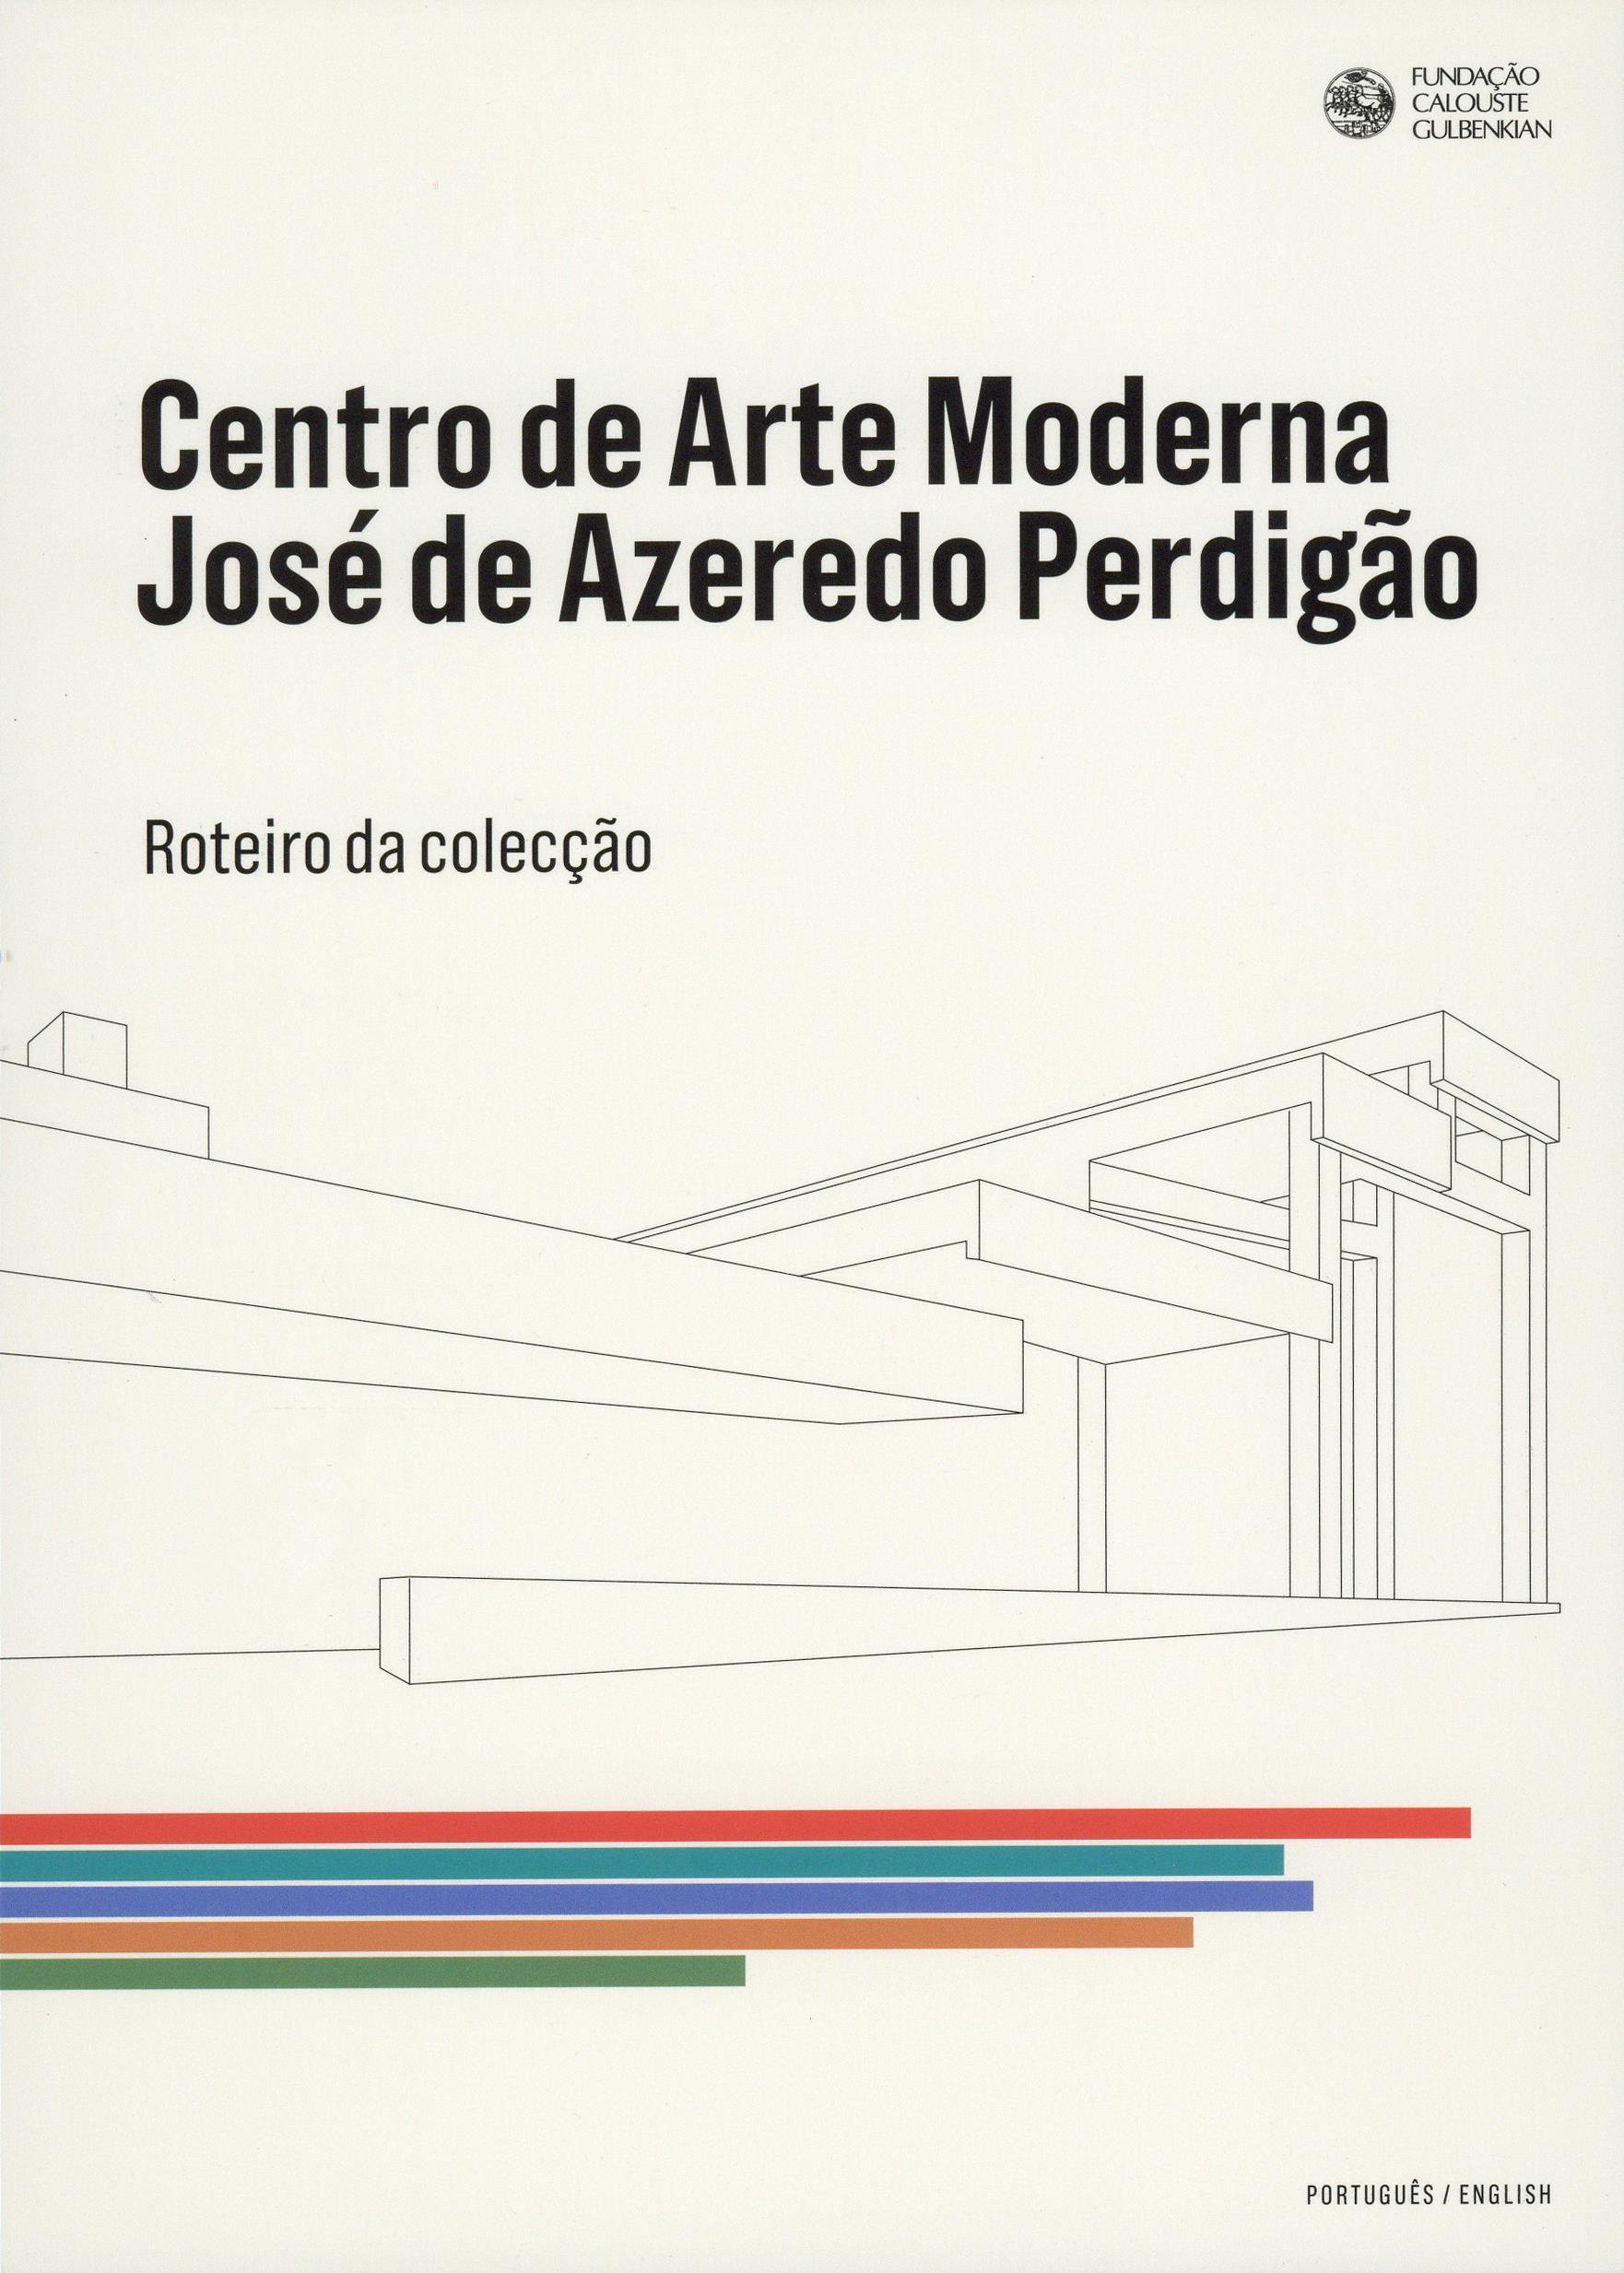 Roteiro do Centro de Arte Moderna [lançamento editorial]